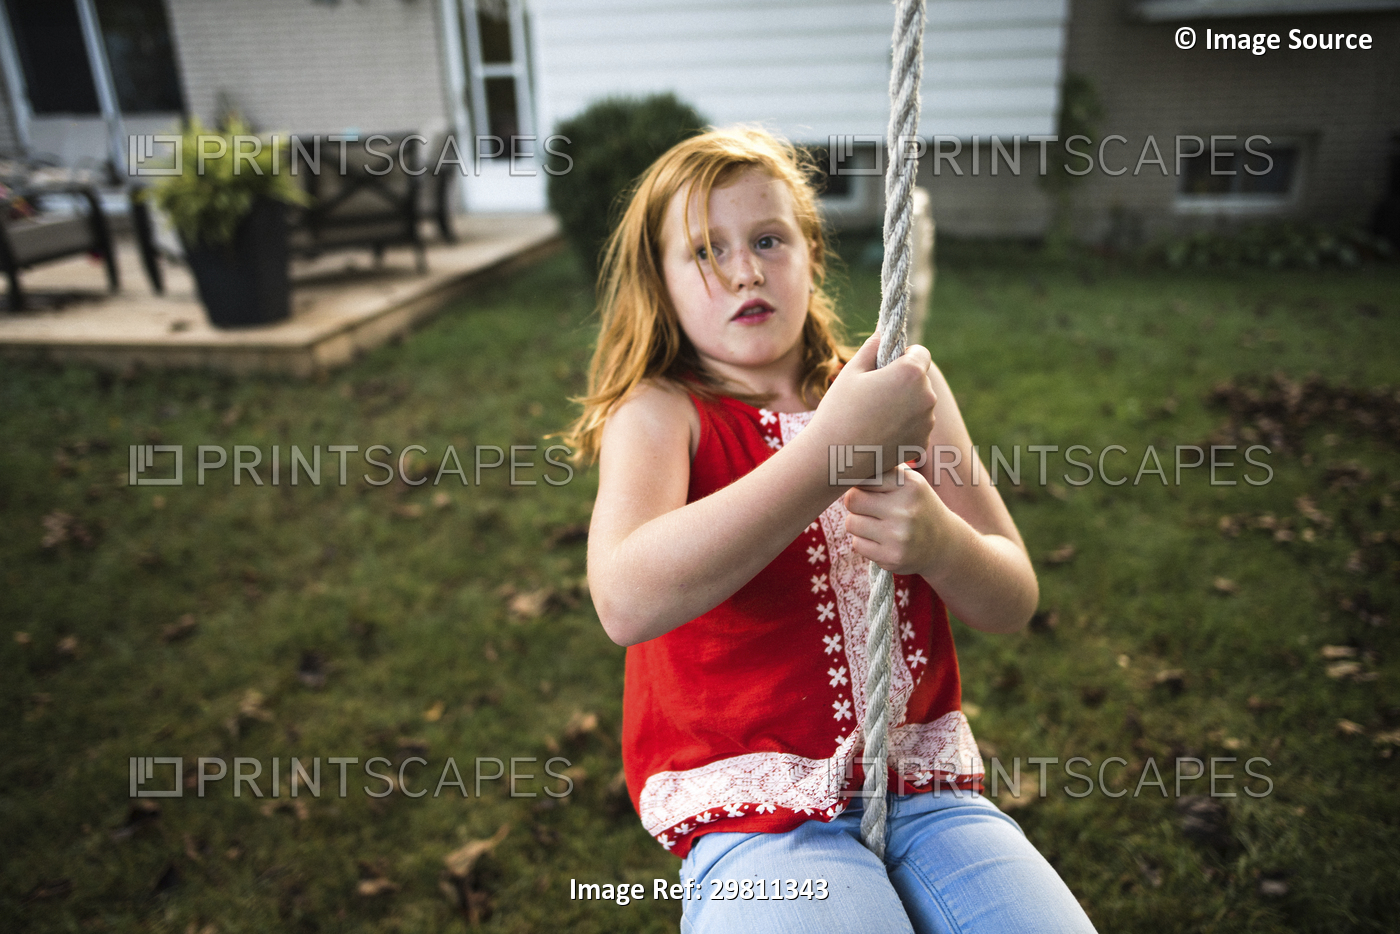 Girl swinging on rope in garden